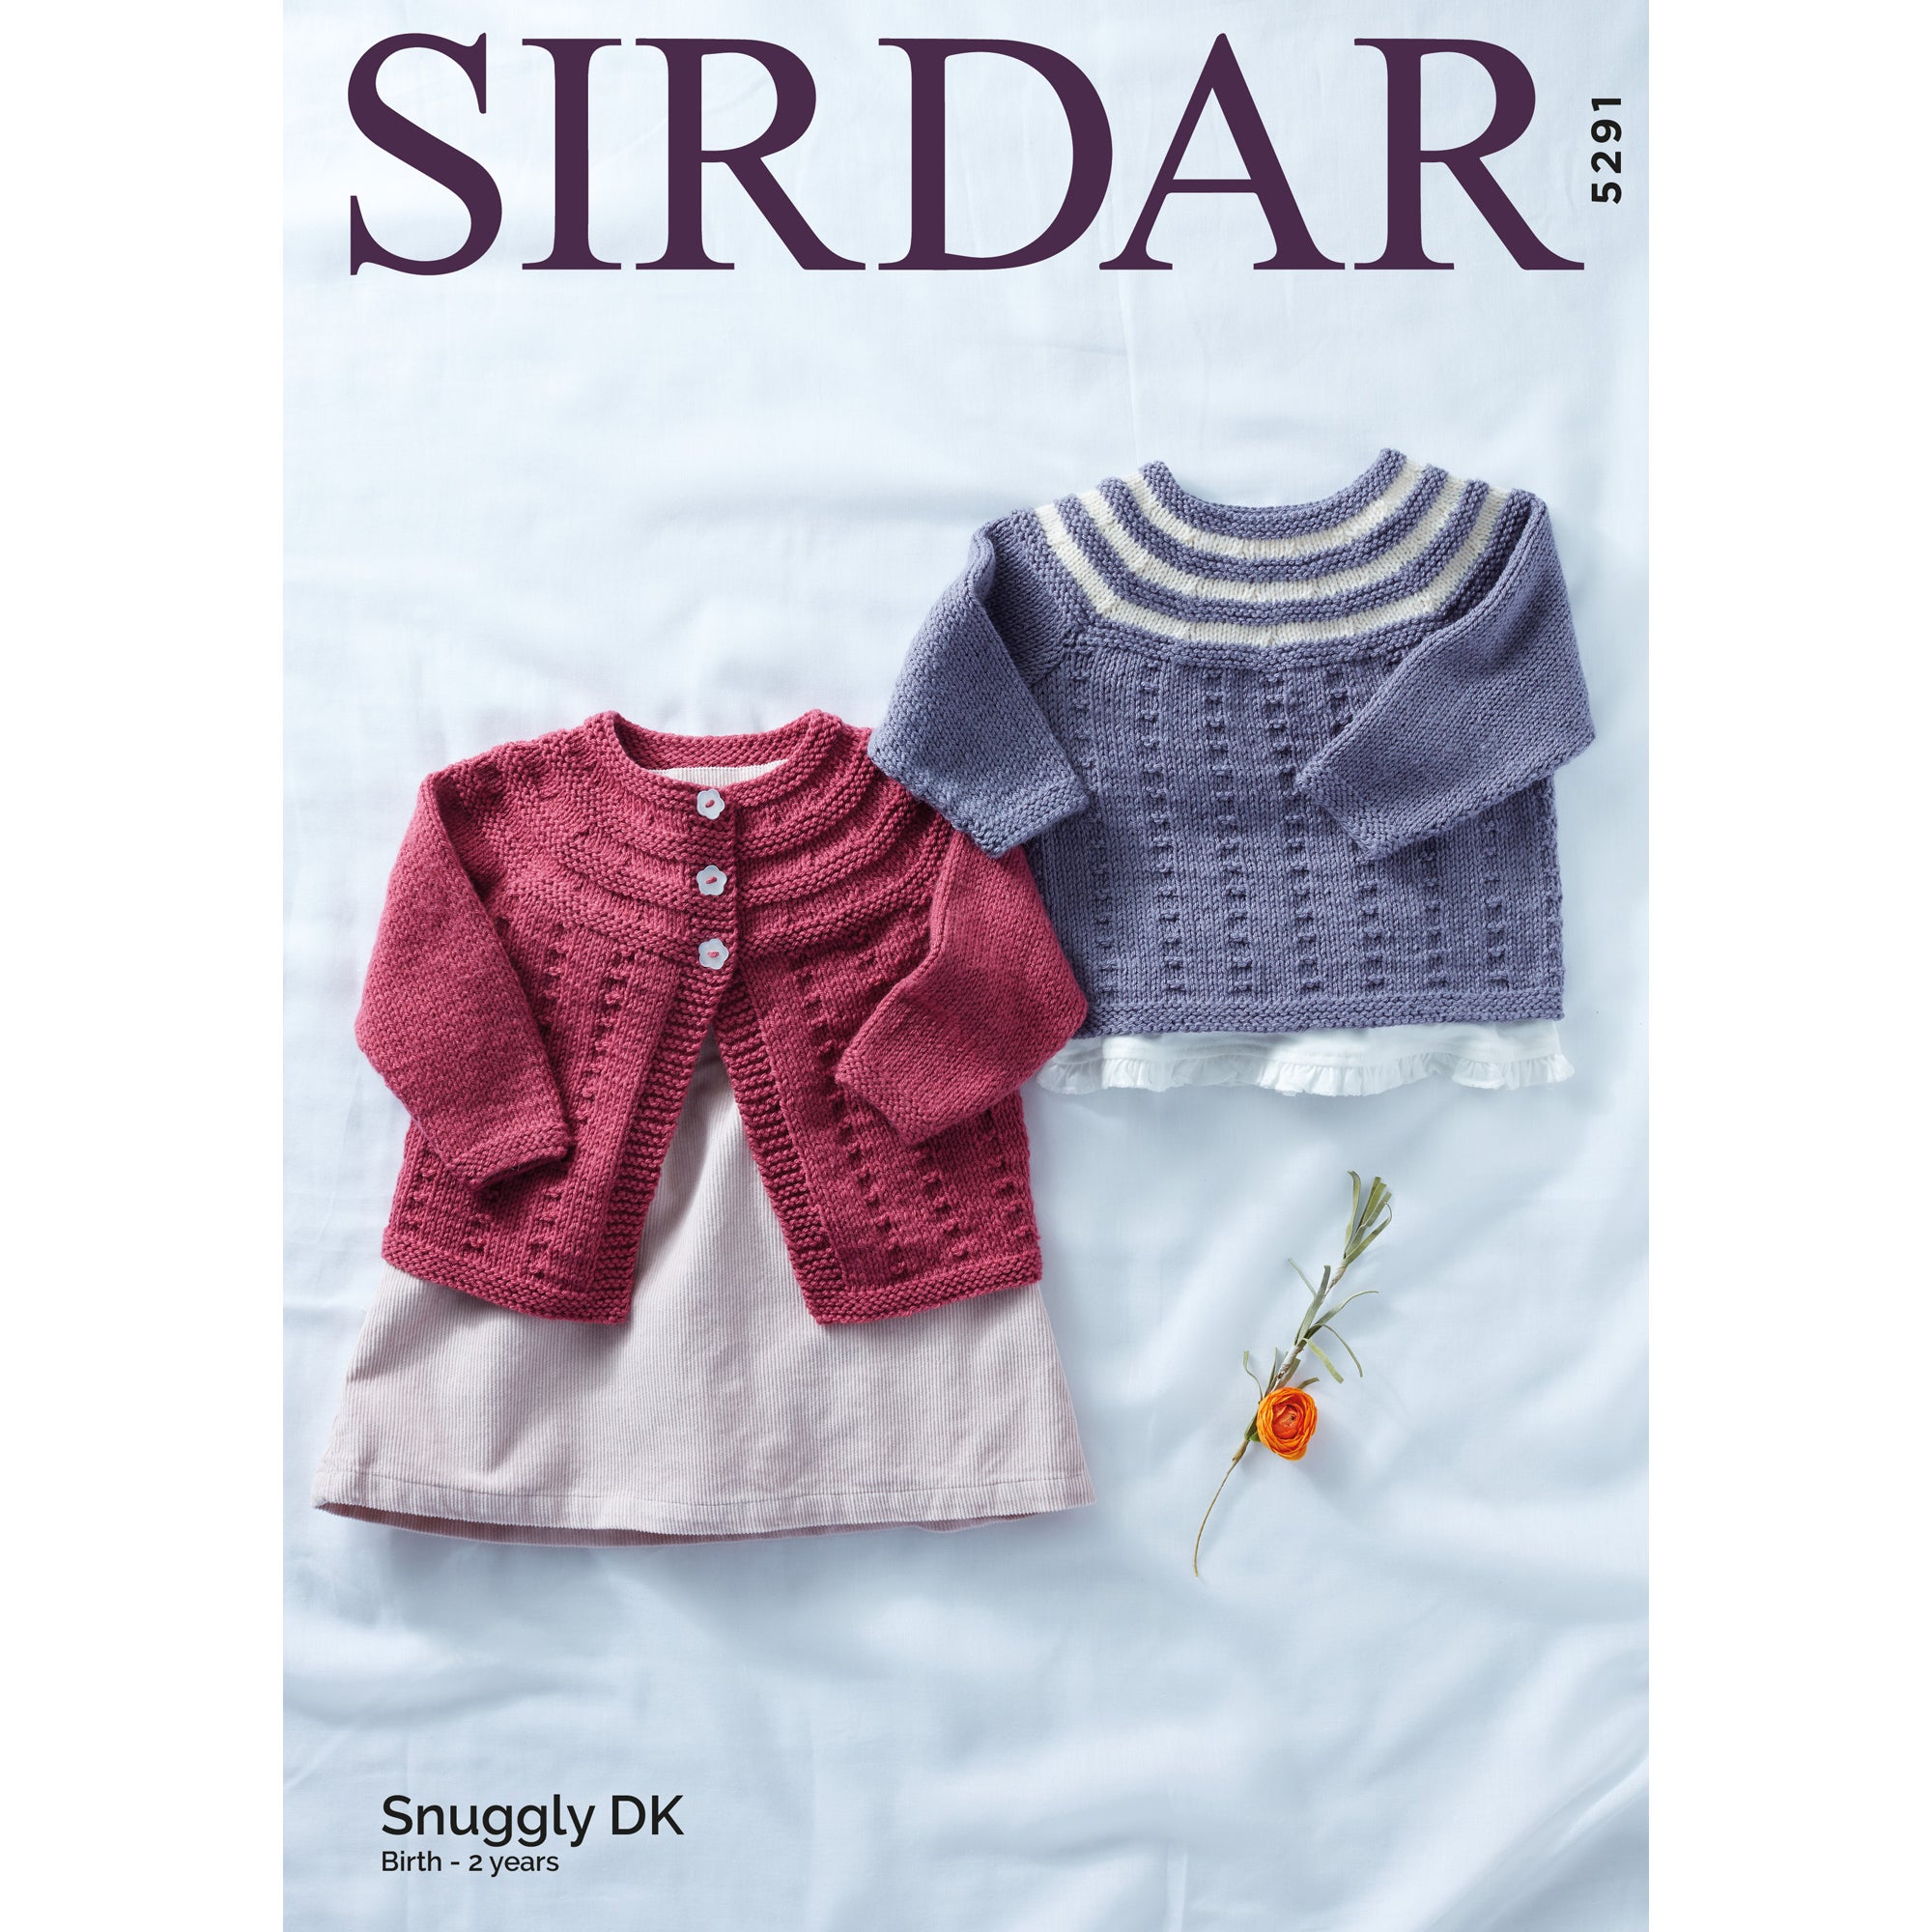 Sirdar 5291 Snuggly DK Patterned Cardigan and Jumper  Leaflet